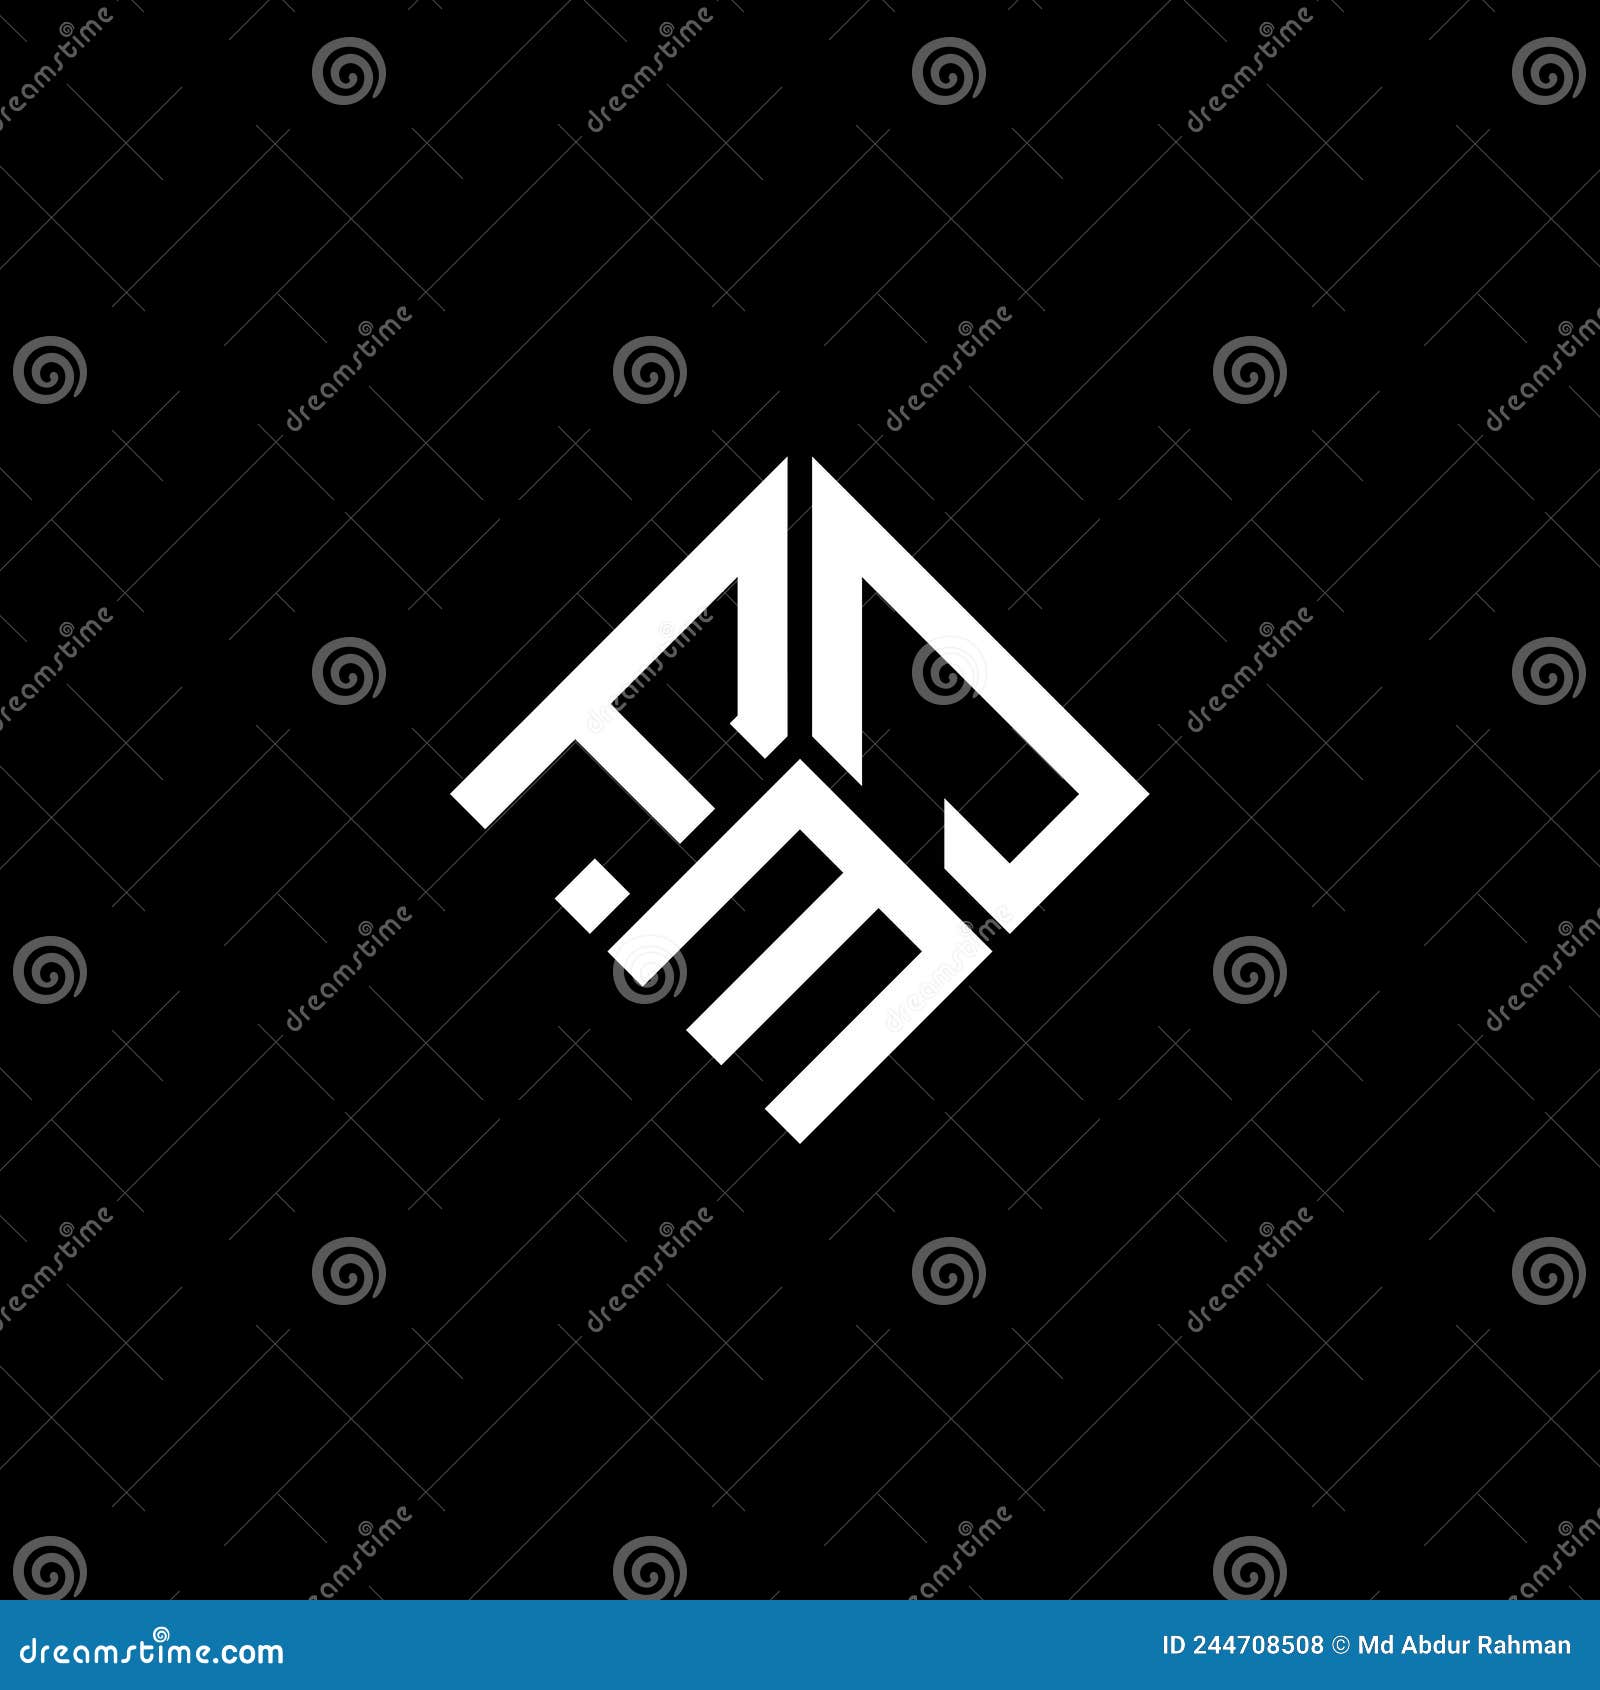 fmj letter logo  on black background. fmj creative initials letter logo concept. fmj letter 